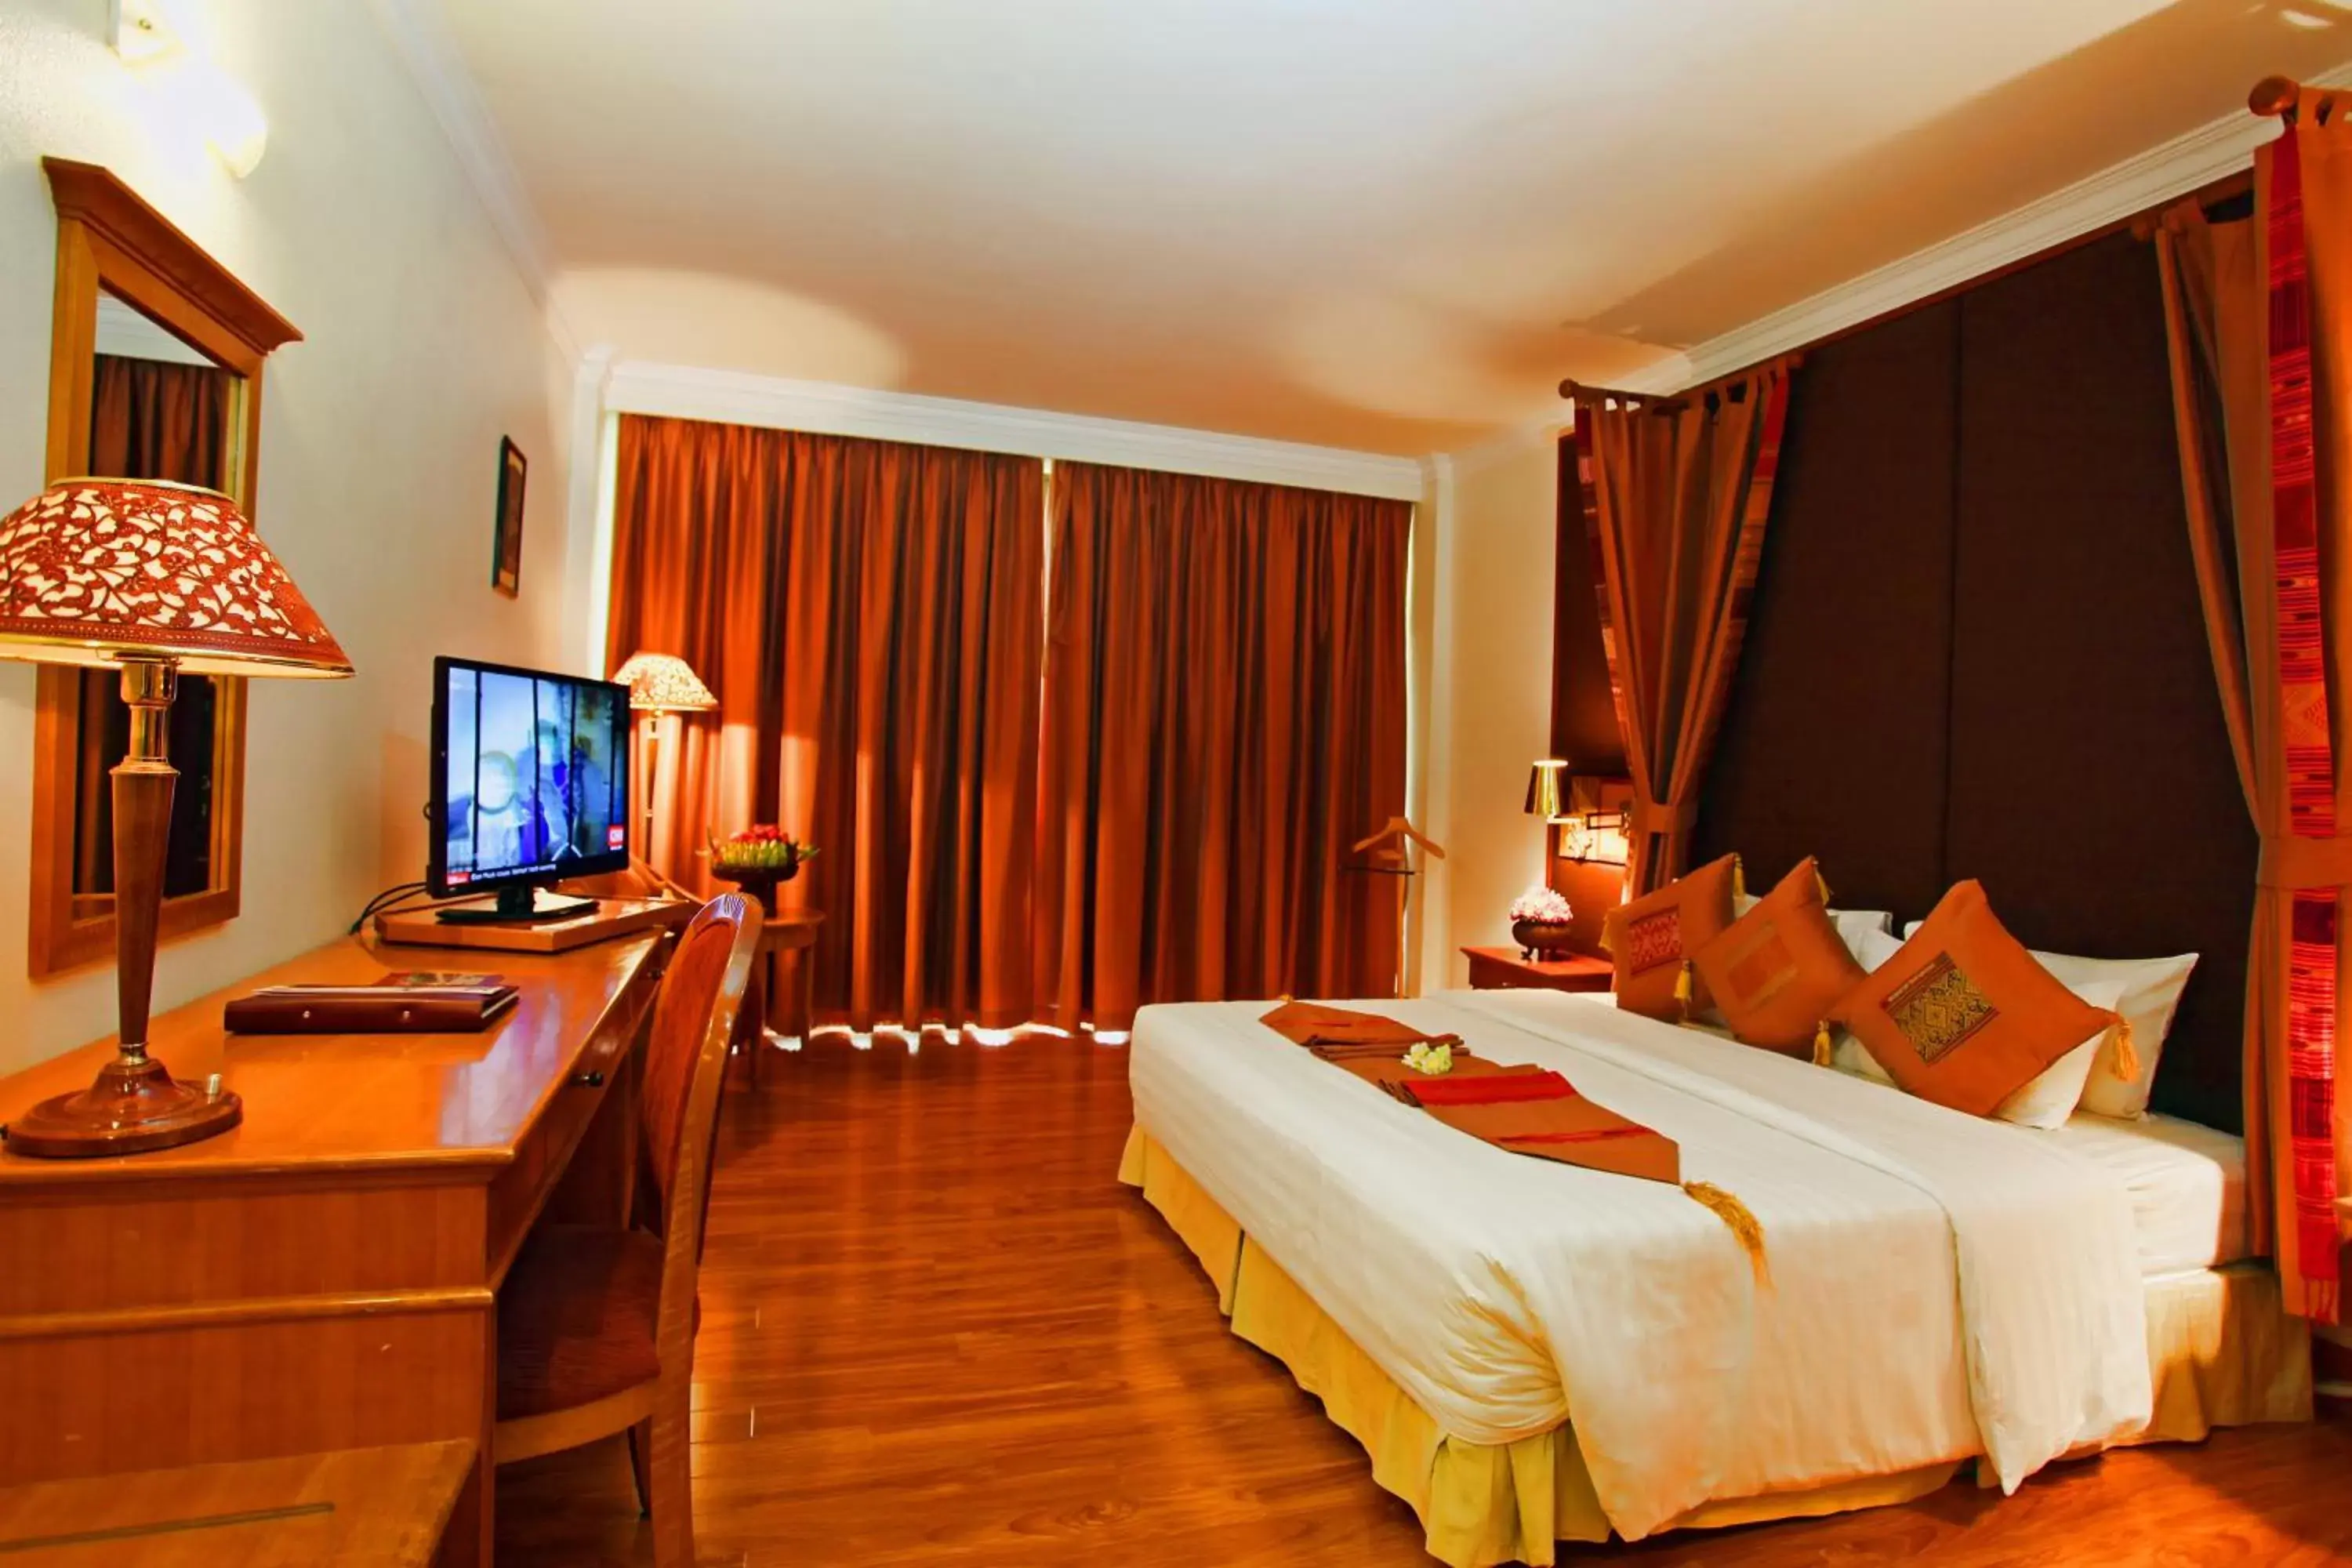 Bedroom, TV/Entertainment Center in Angkor Century Resort & Spa